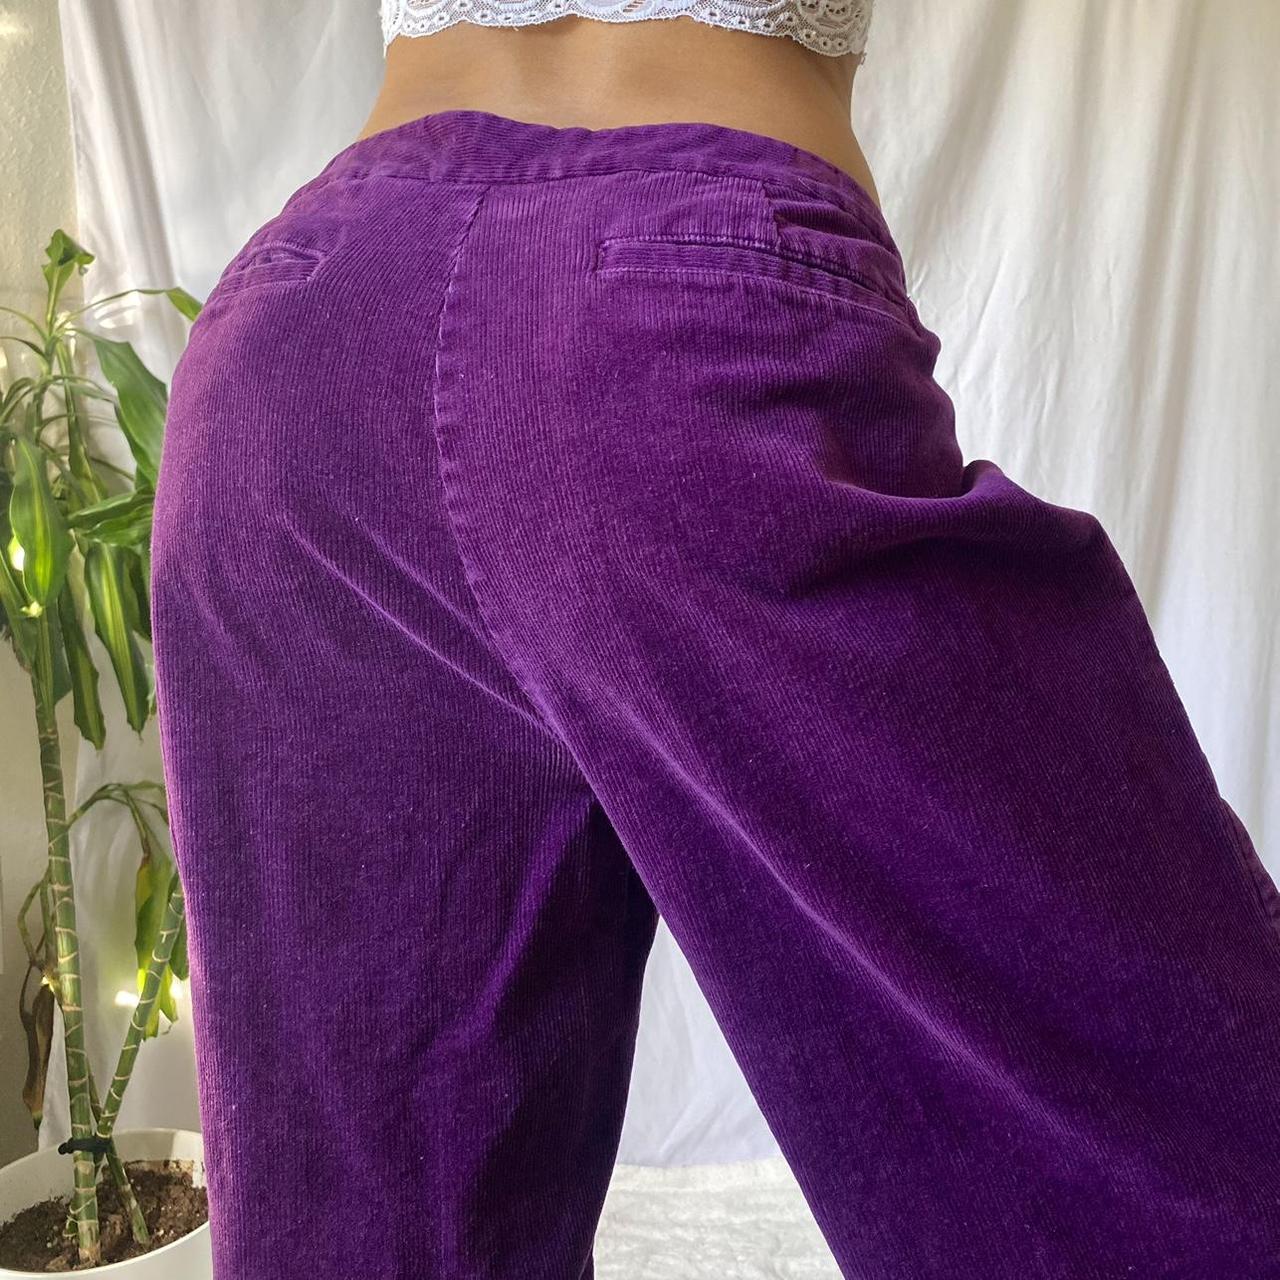 Vintage Purple Corduroy Pants 💜, The coolest high